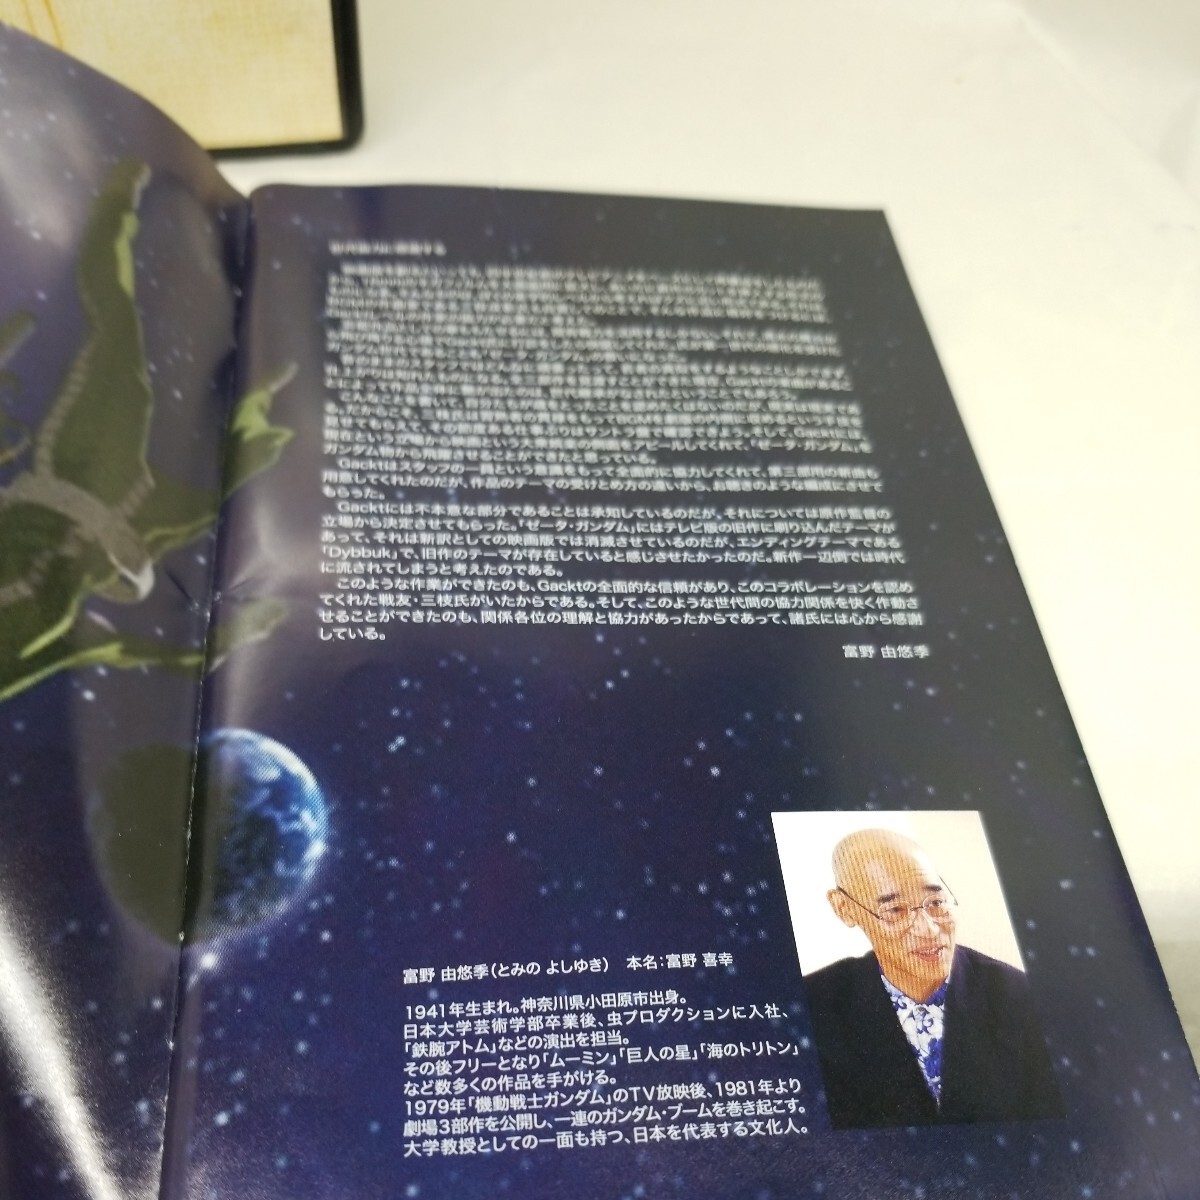 機動戦士Zガンダム~A New Translation Review~ (初回限定盤) 中古の画像3